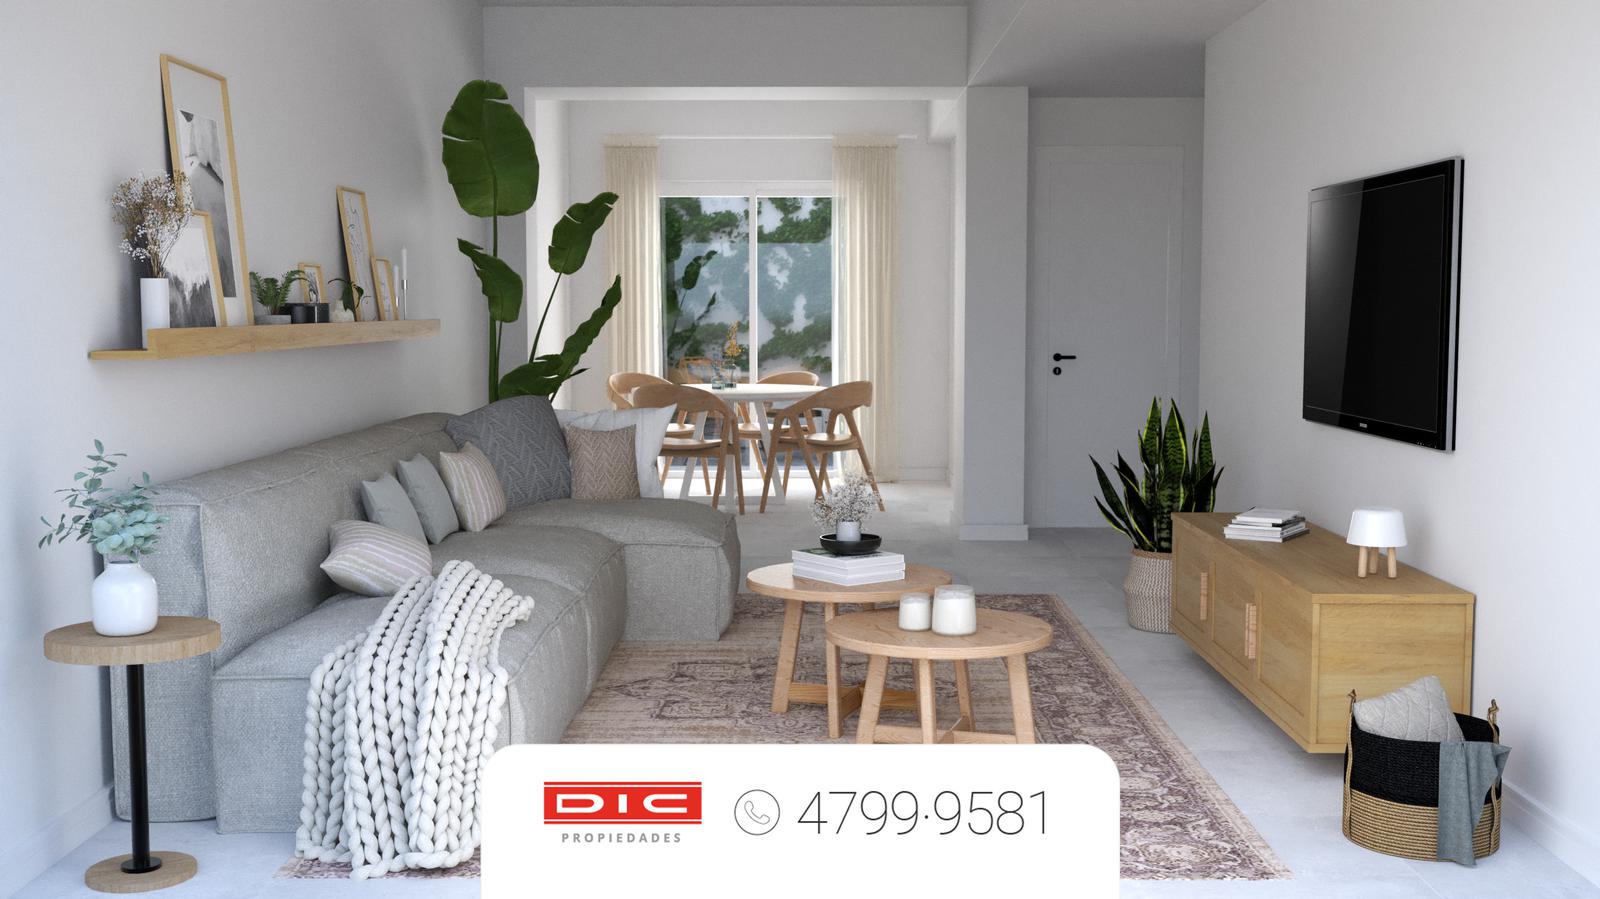 #5143360 | Sale | House | Olivos (Dic Propiedades)